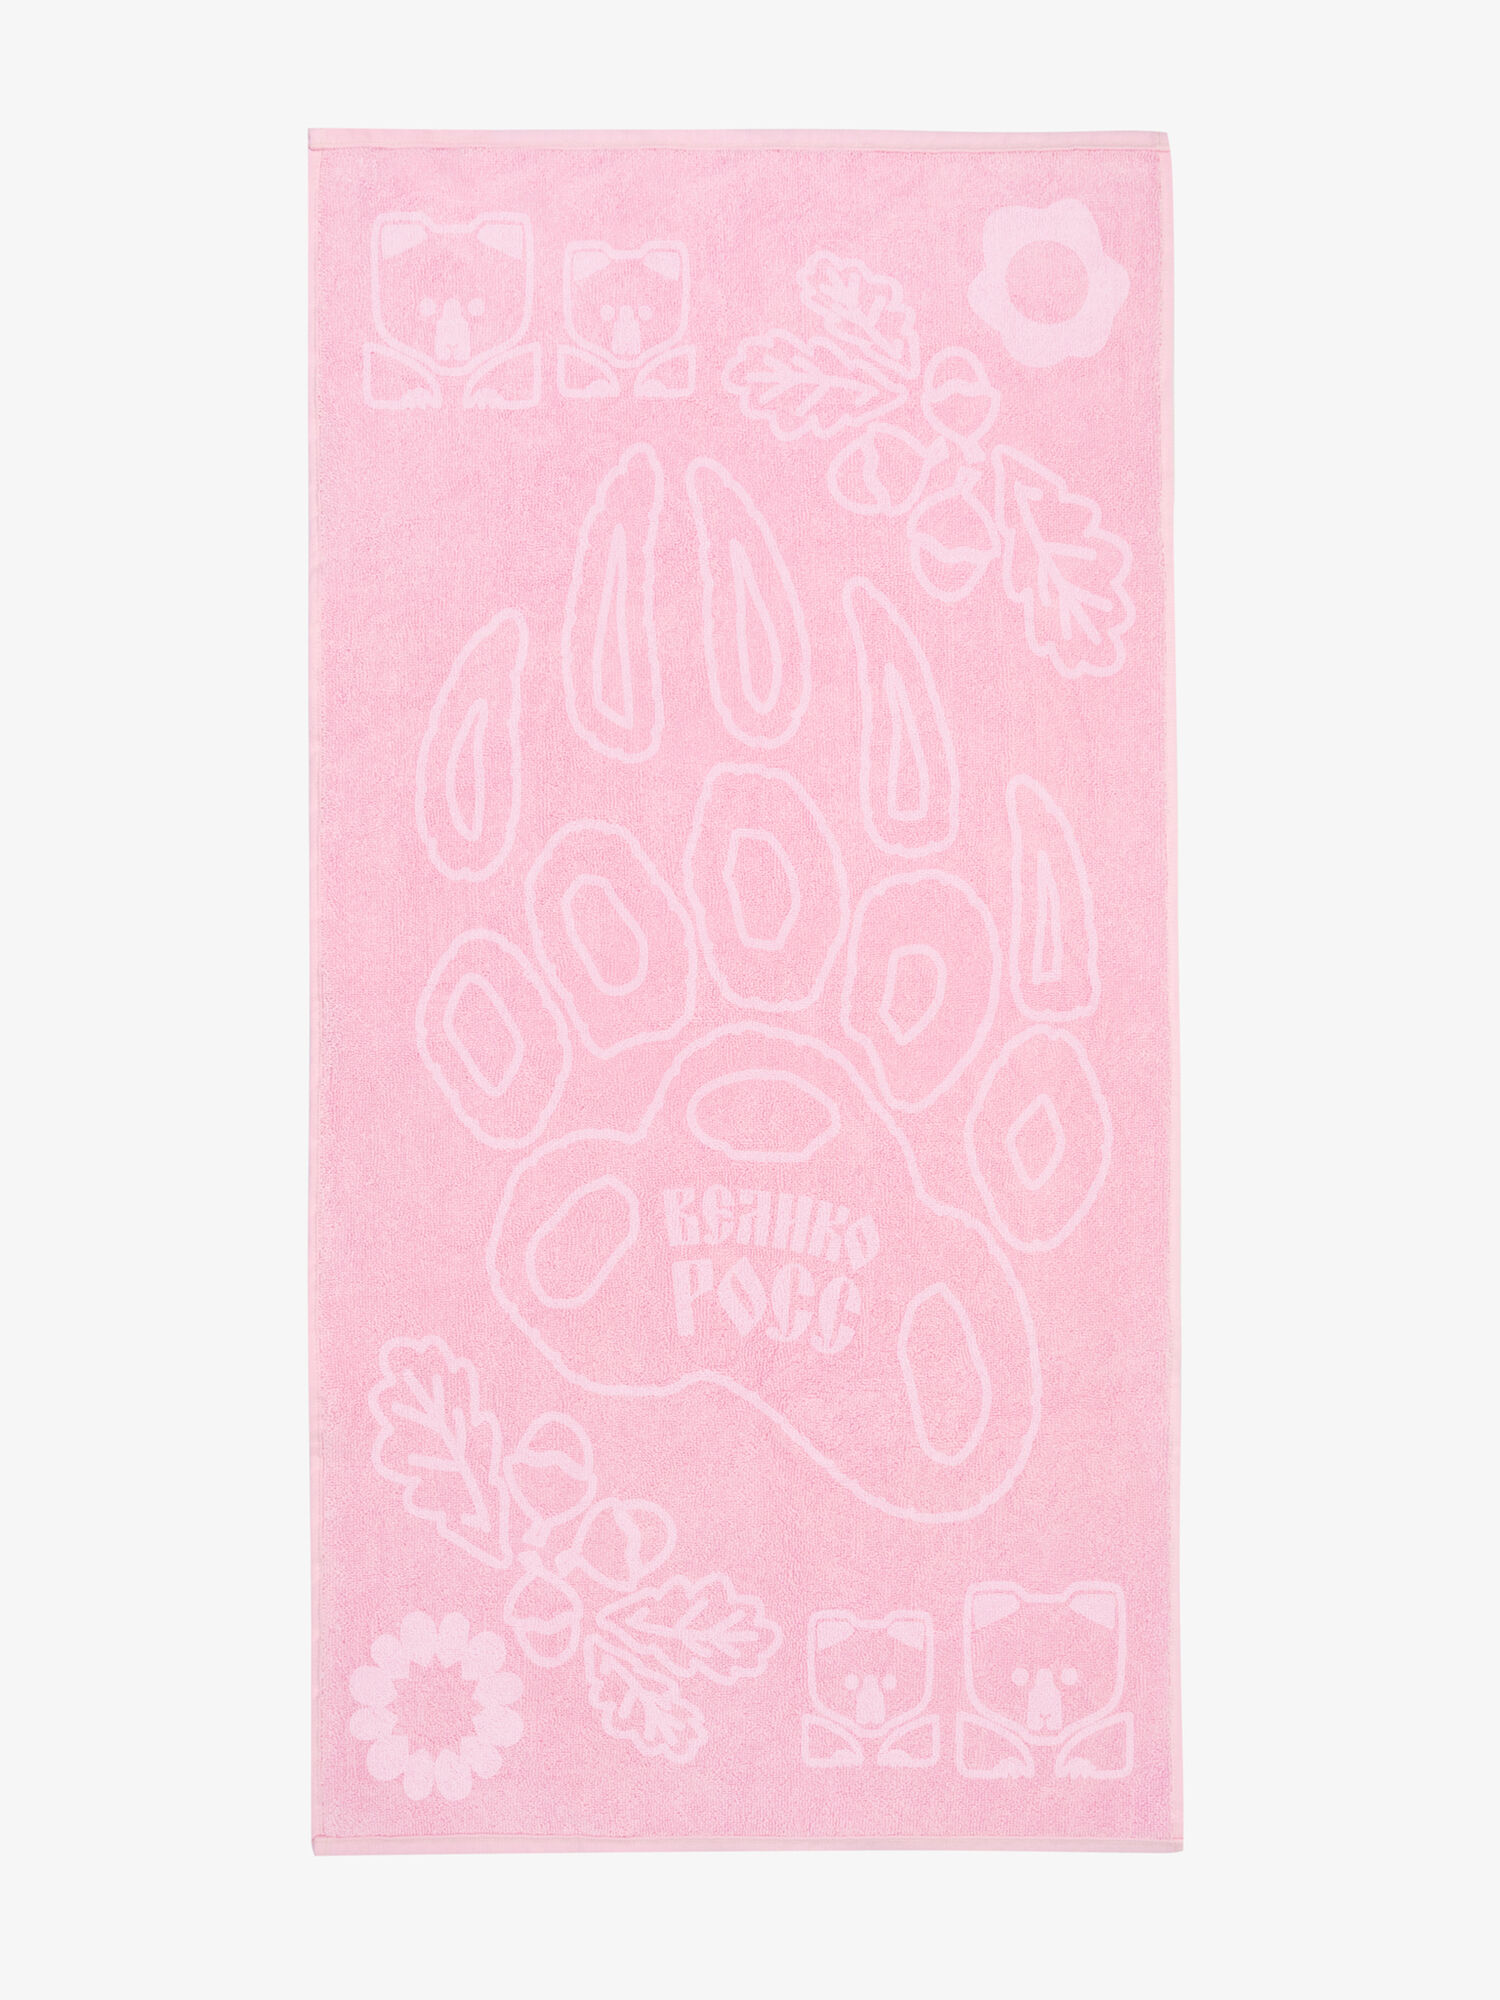 Полотенце махровое с объёмным жаккардовым рисунком «Таинственный Лес» розового цвета